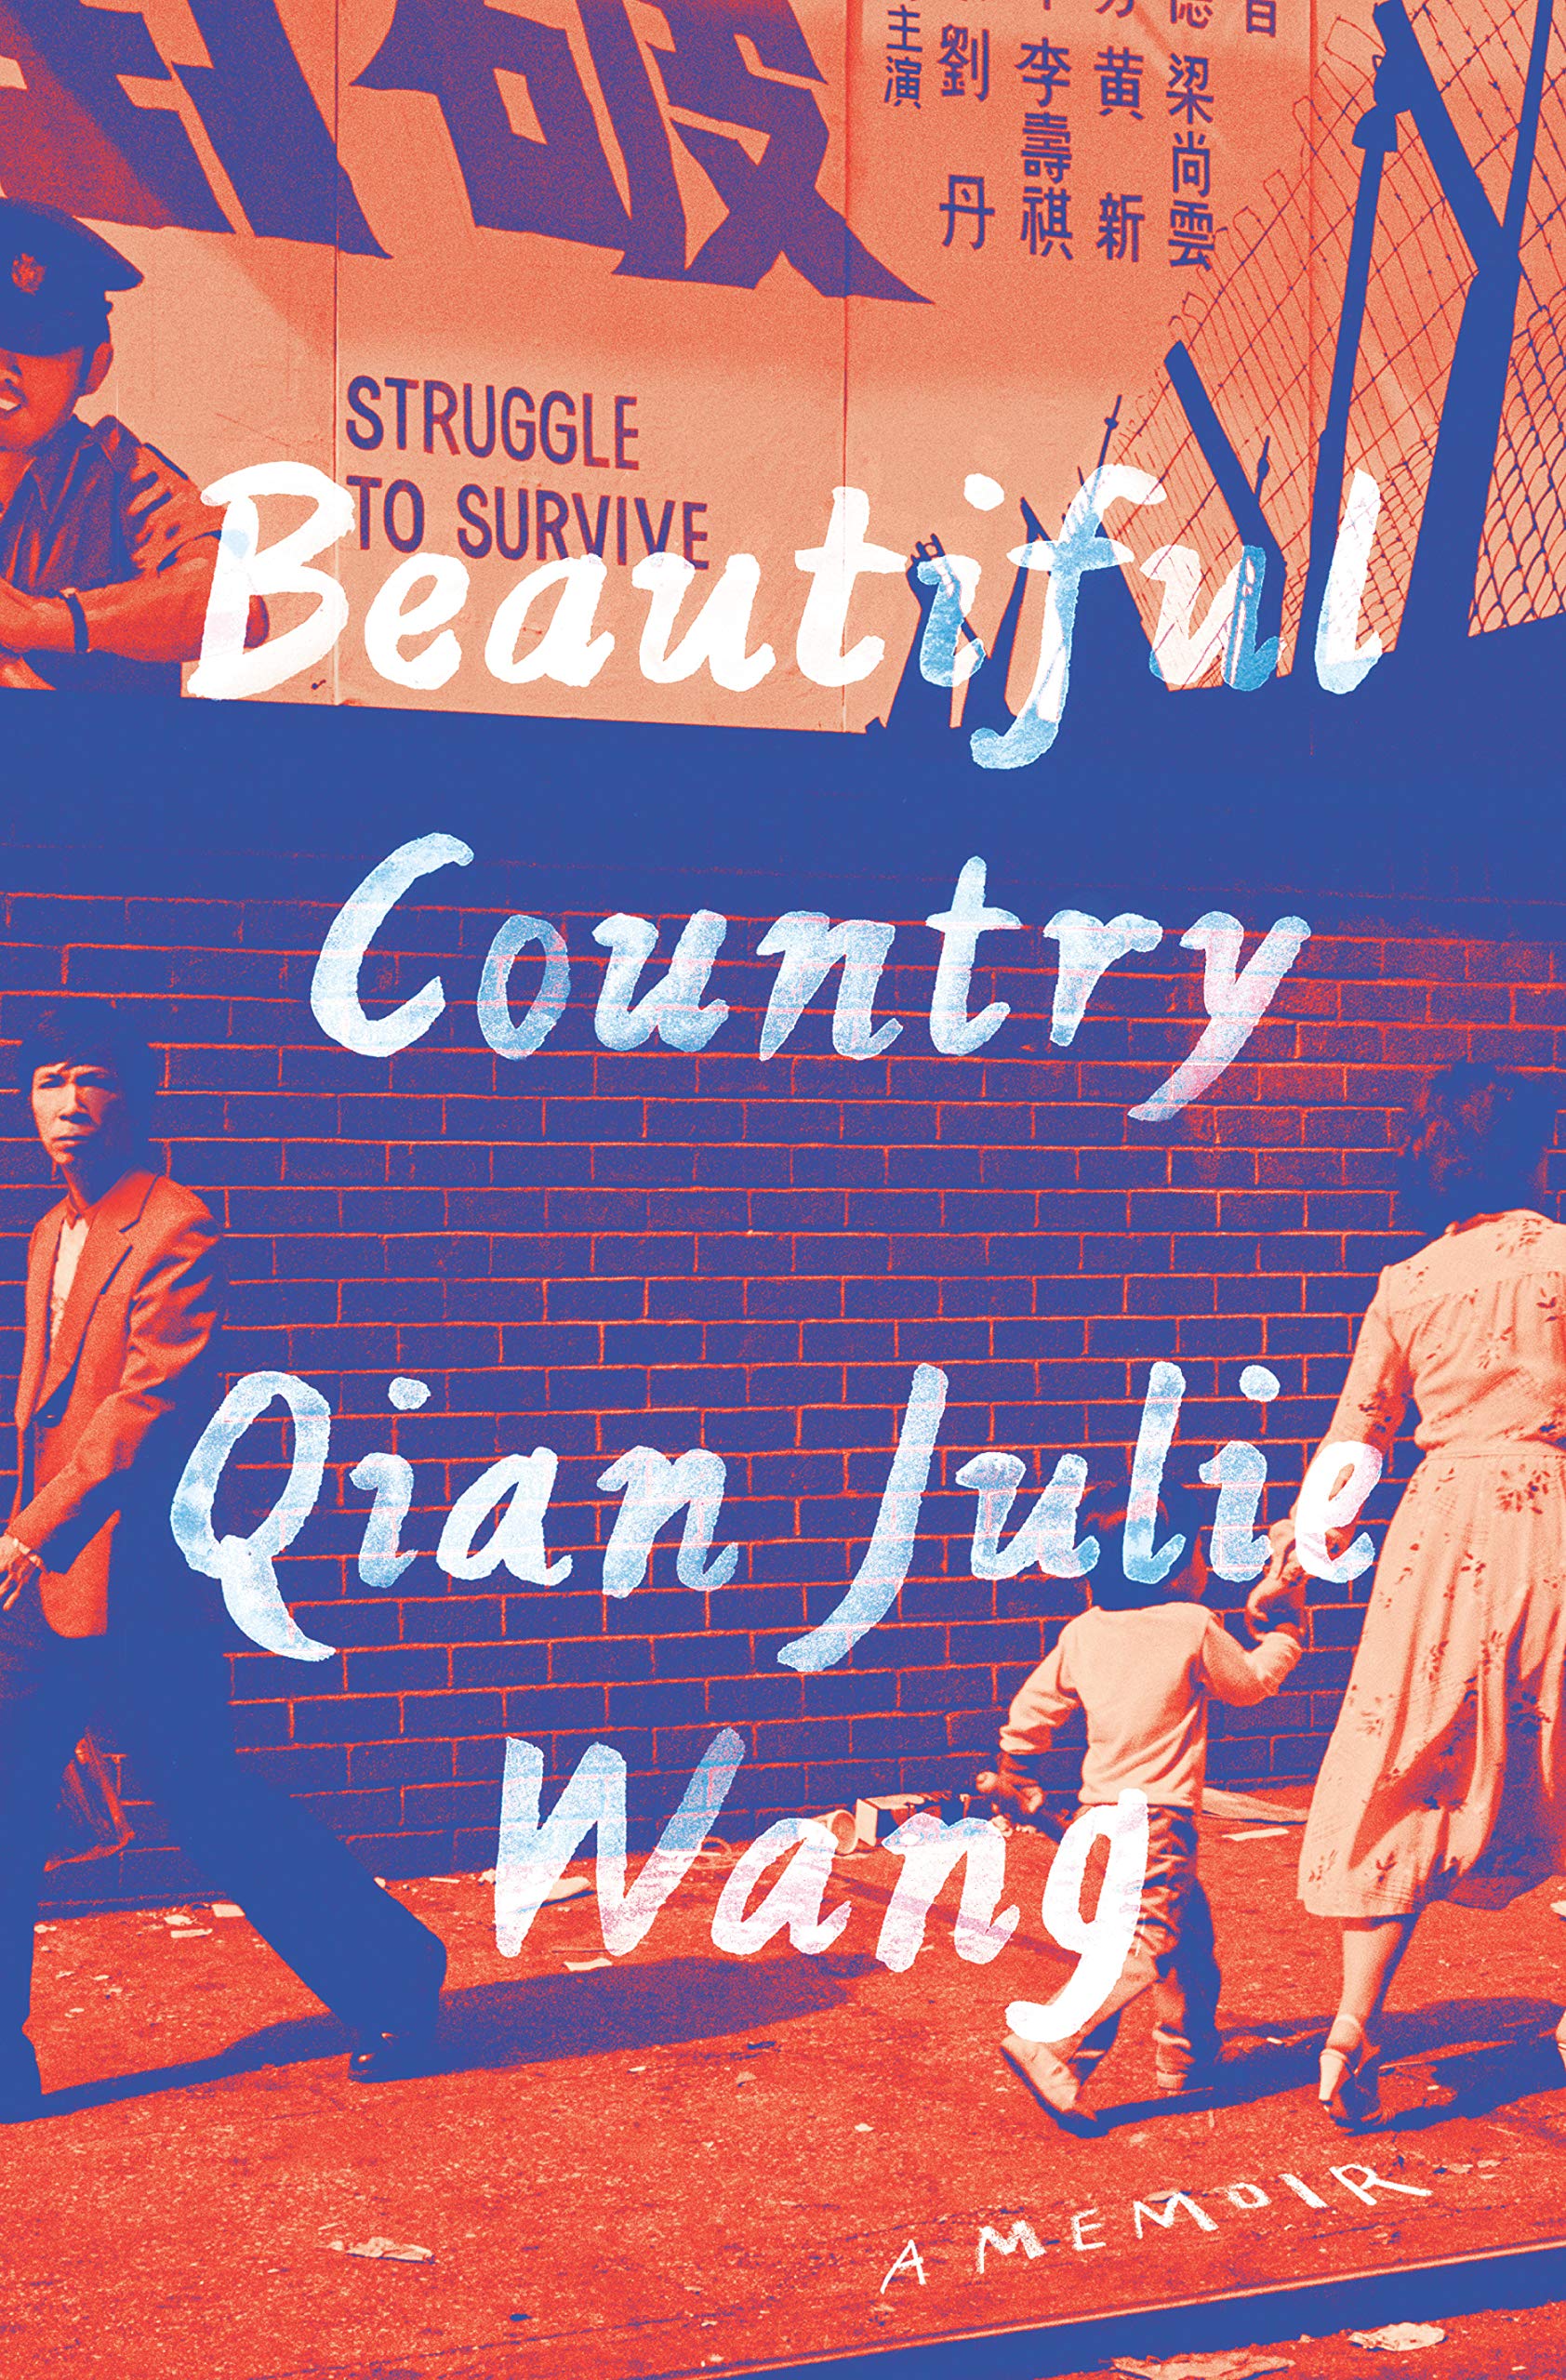 Beautiful Country By Qian Julie Wang